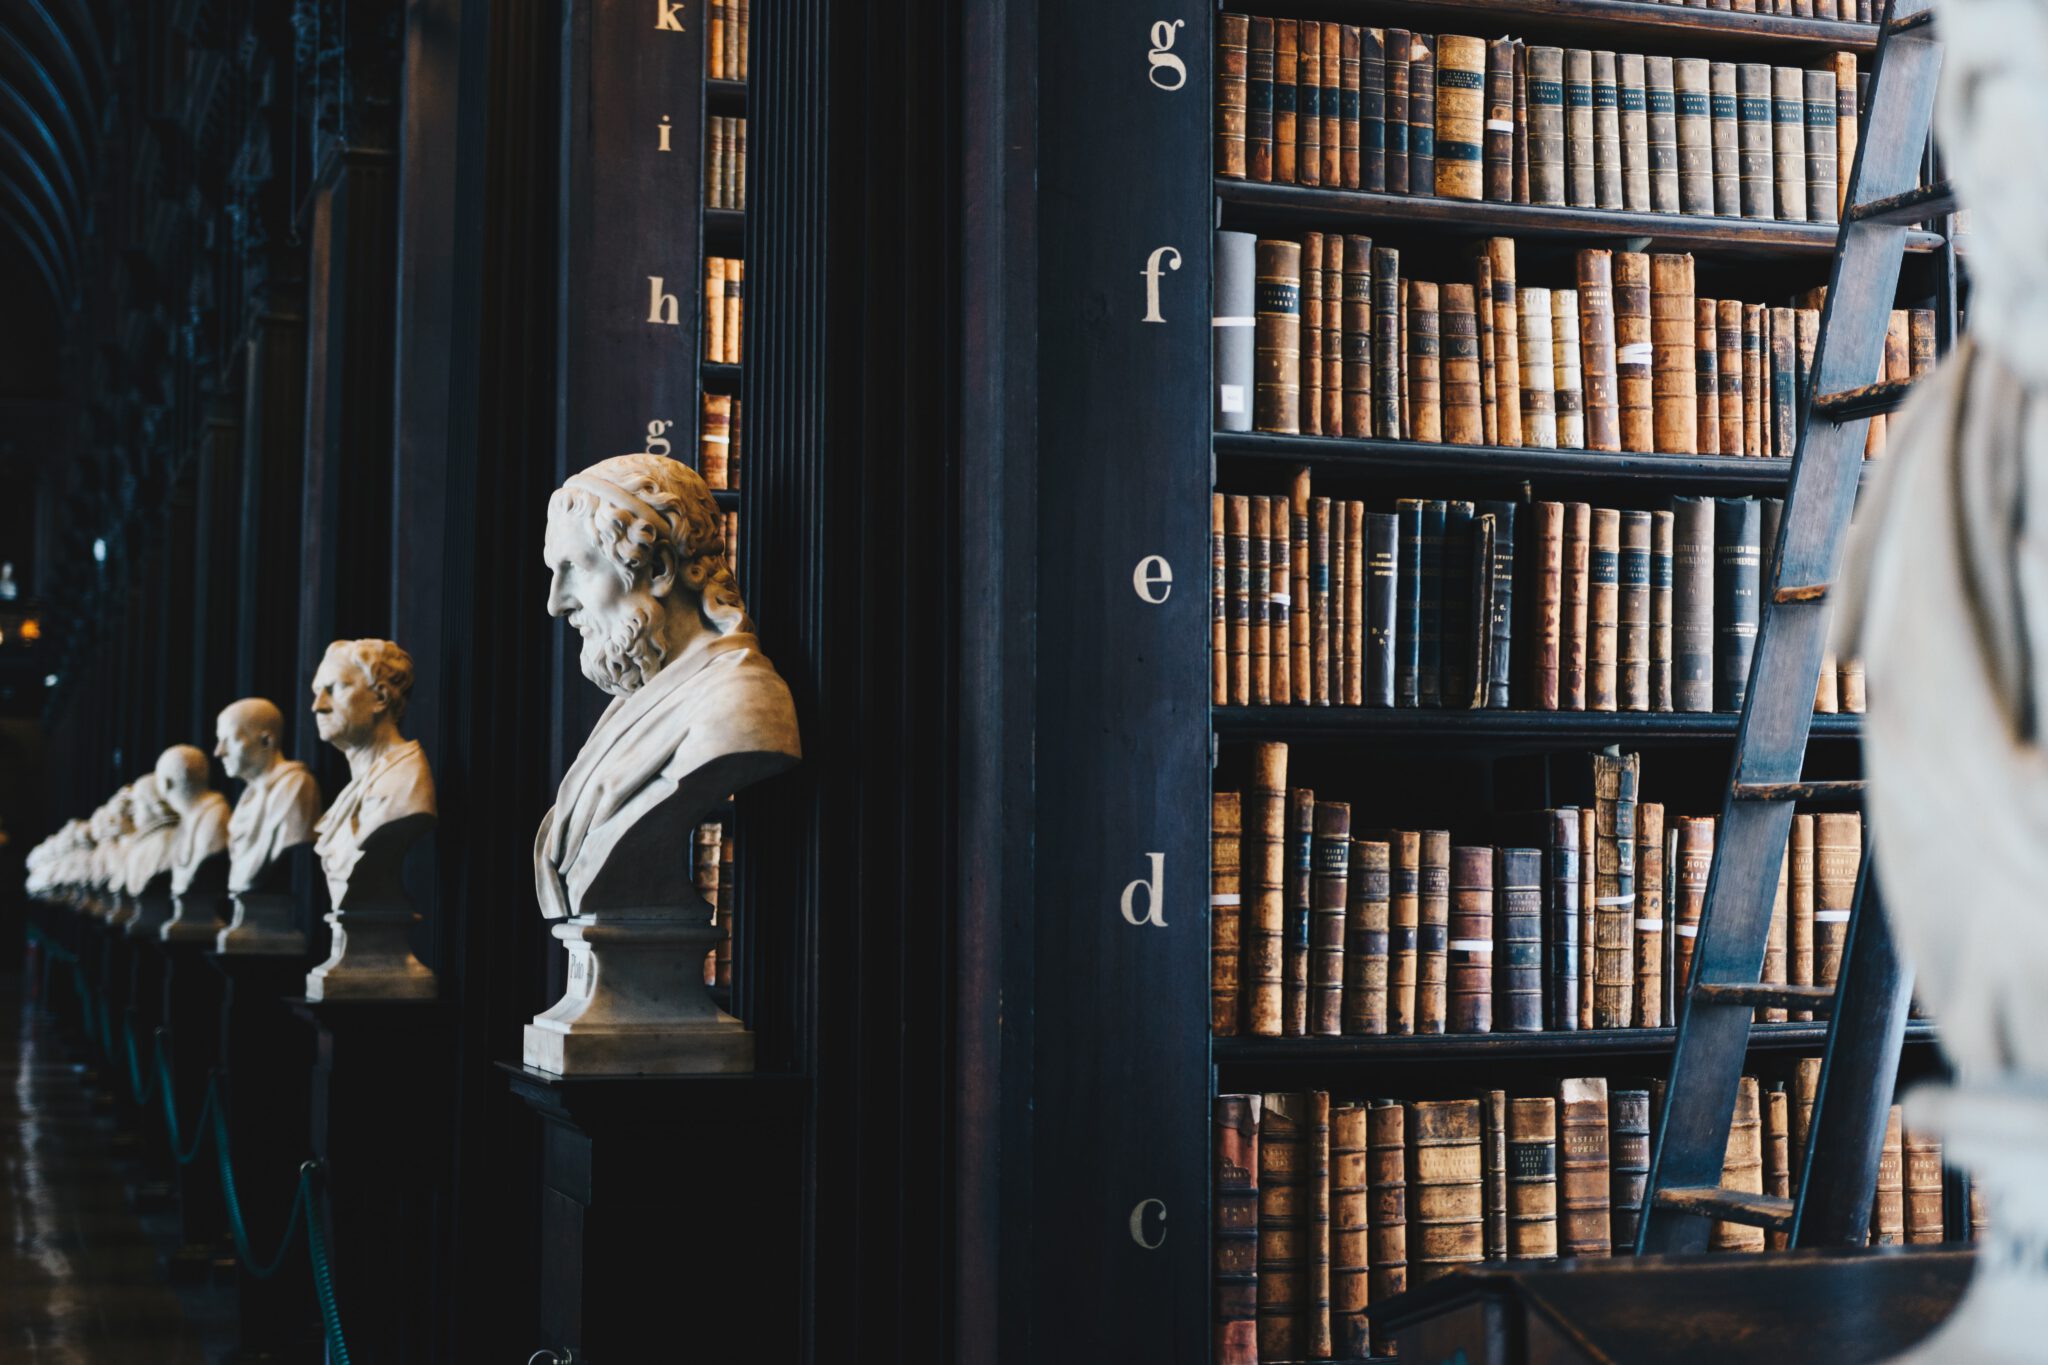 Griekse standbeelden in een grote oude bibliotheek